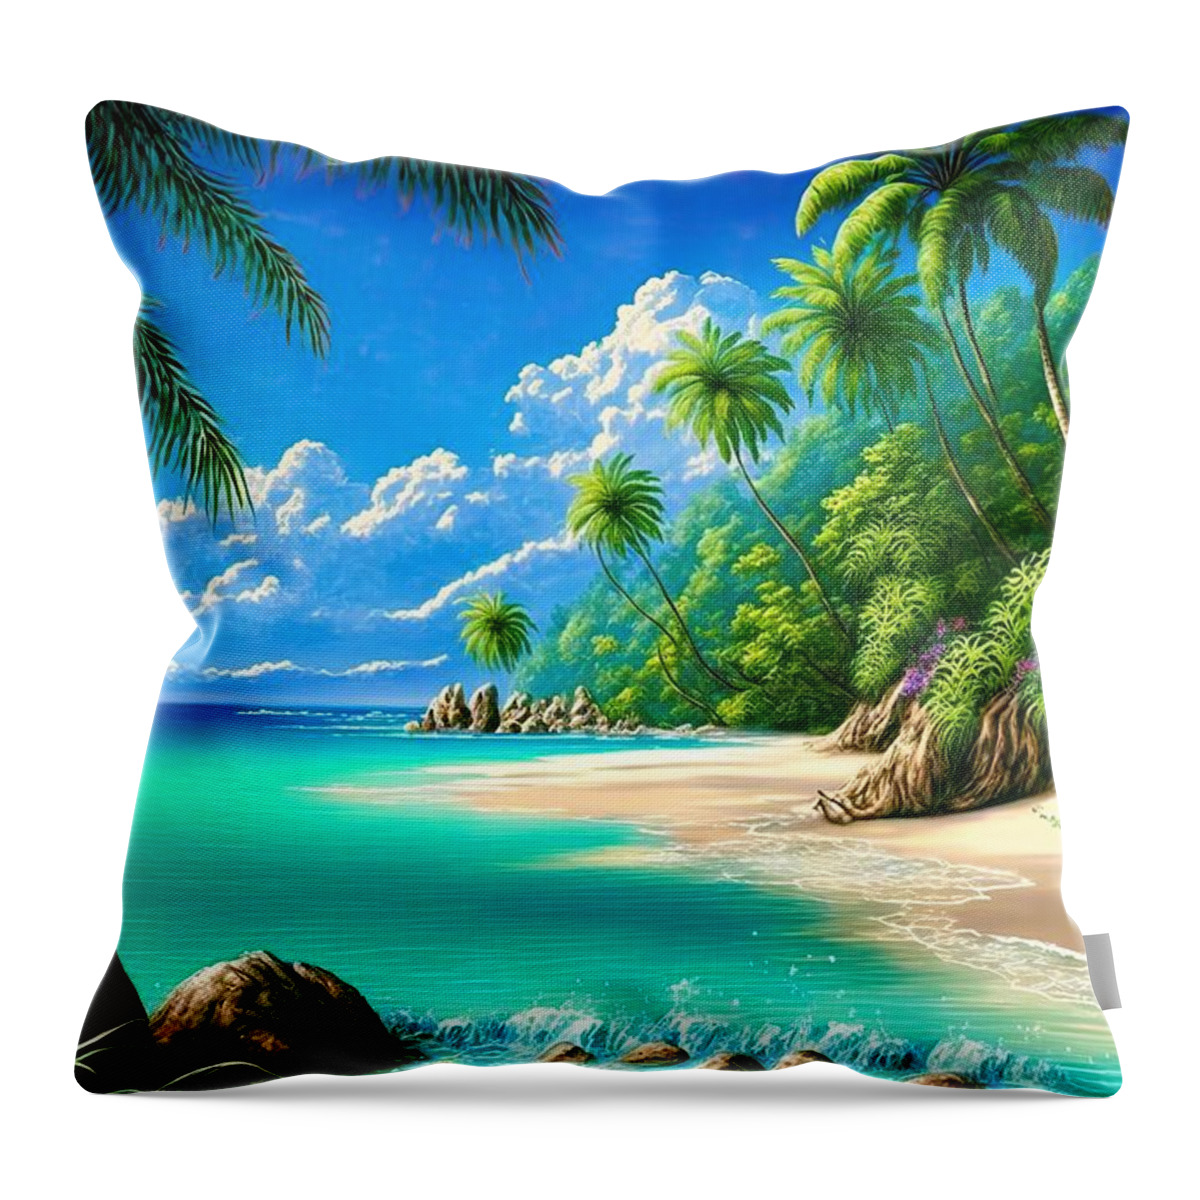 Tropical Throw Pillow featuring the digital art Tropical Paradise Beach 01 by Matthias Hauser